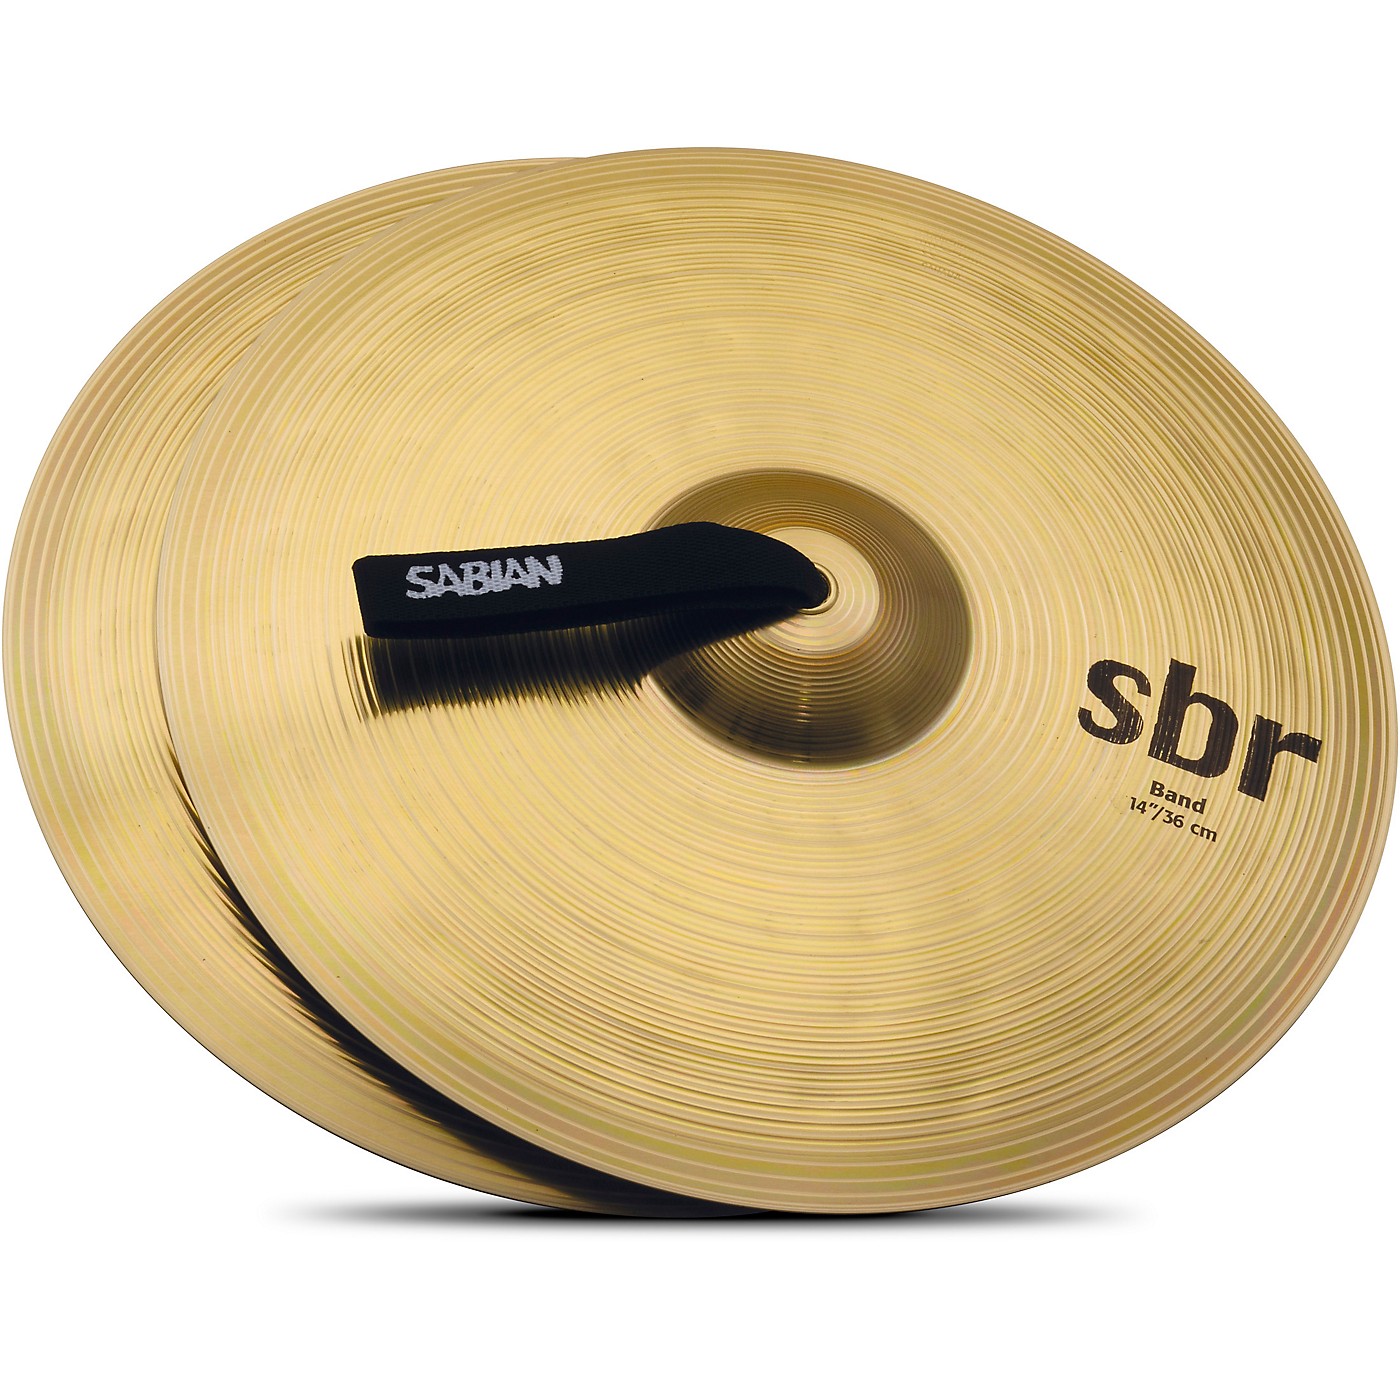 Sabian SBR Band Cymbal Pair thumbnail